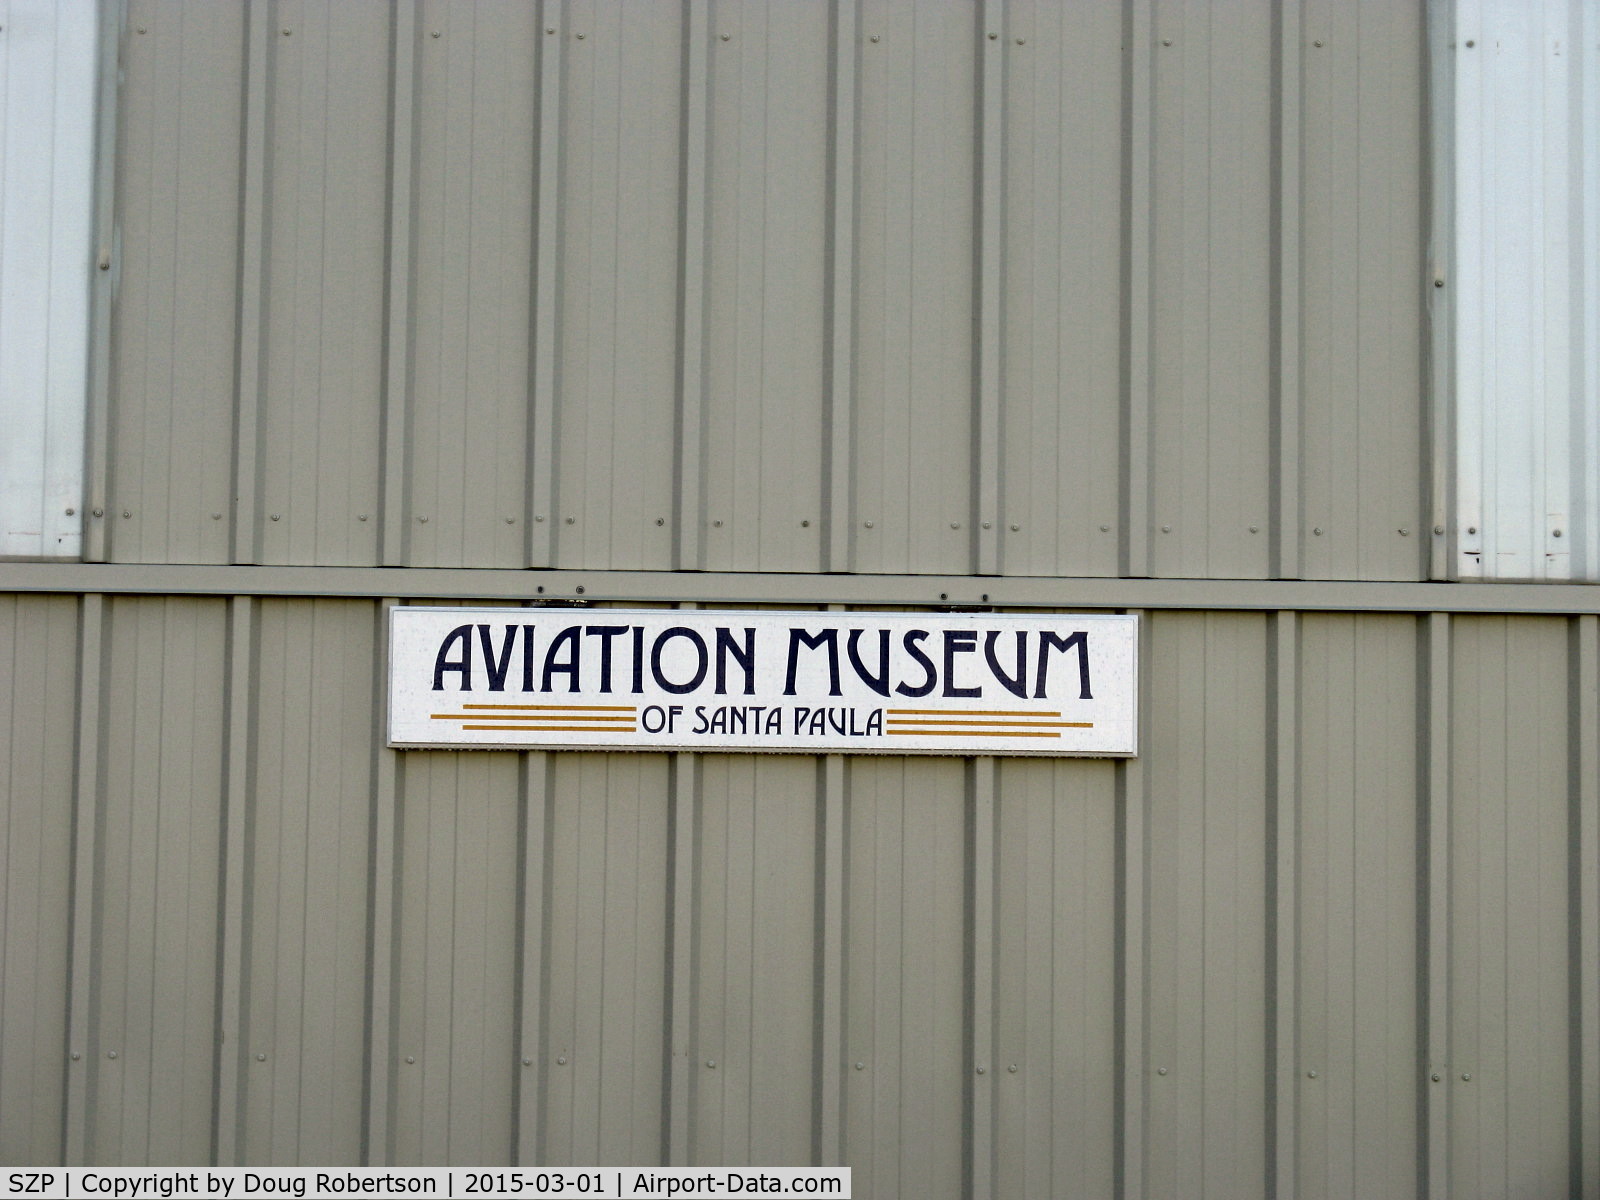 Santa Paula Airport (SZP) - Main Hangar Sign of Aviation Museum of Santa Paula, on closed bi-fold doors.